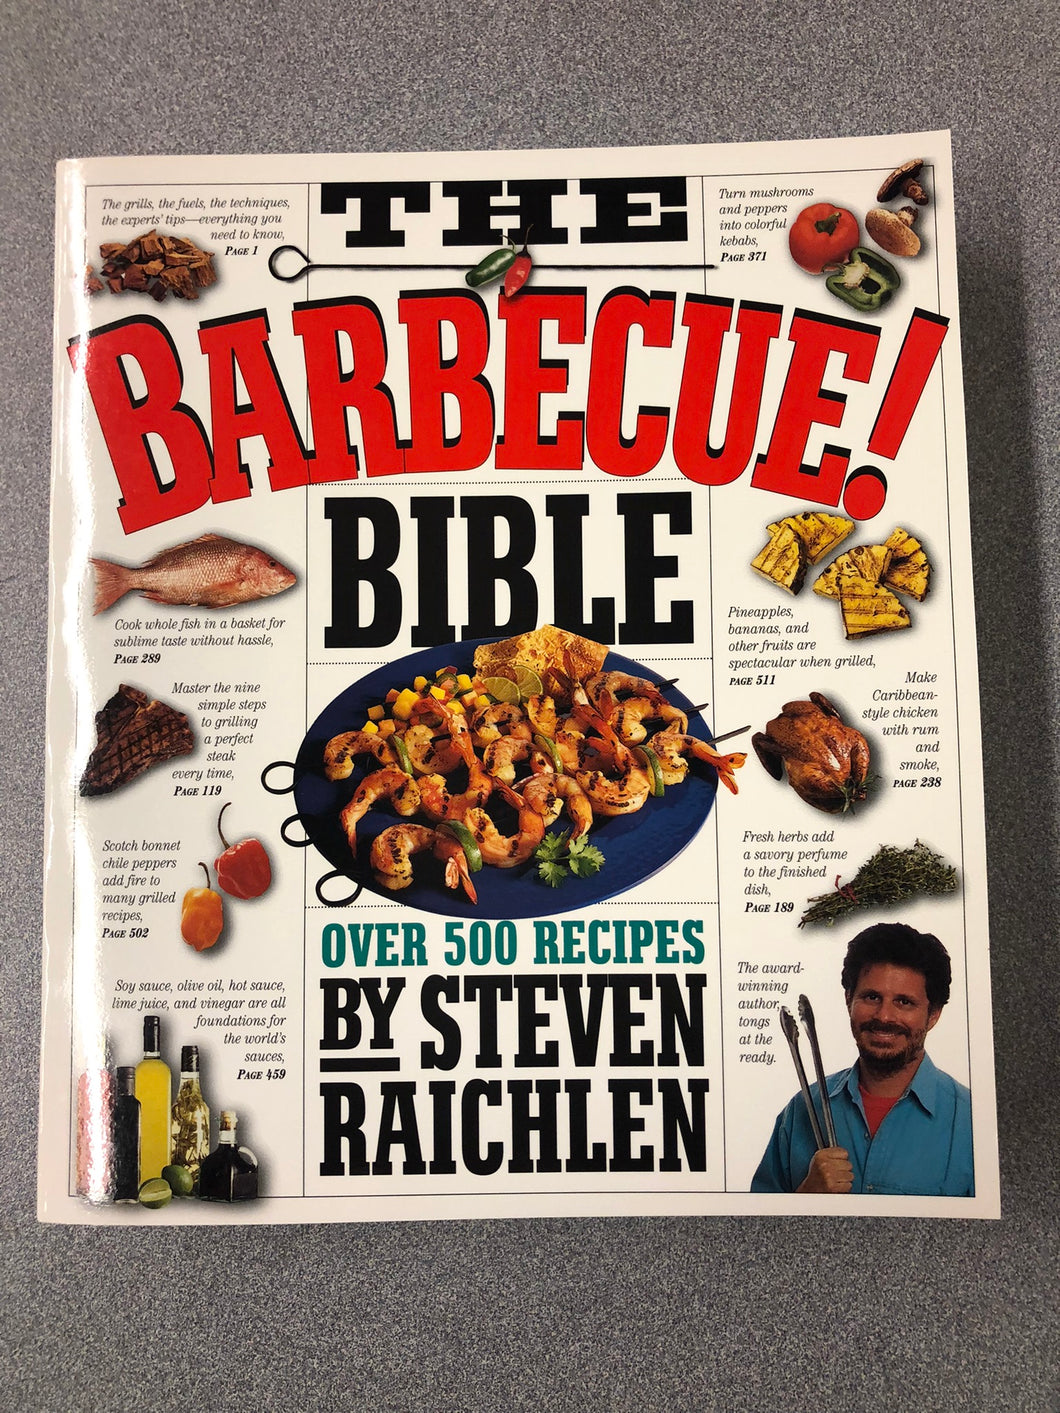 The Barbecue! Bible: Over 500 Recipes, Raichlen, Steven [1998] CO 7/22